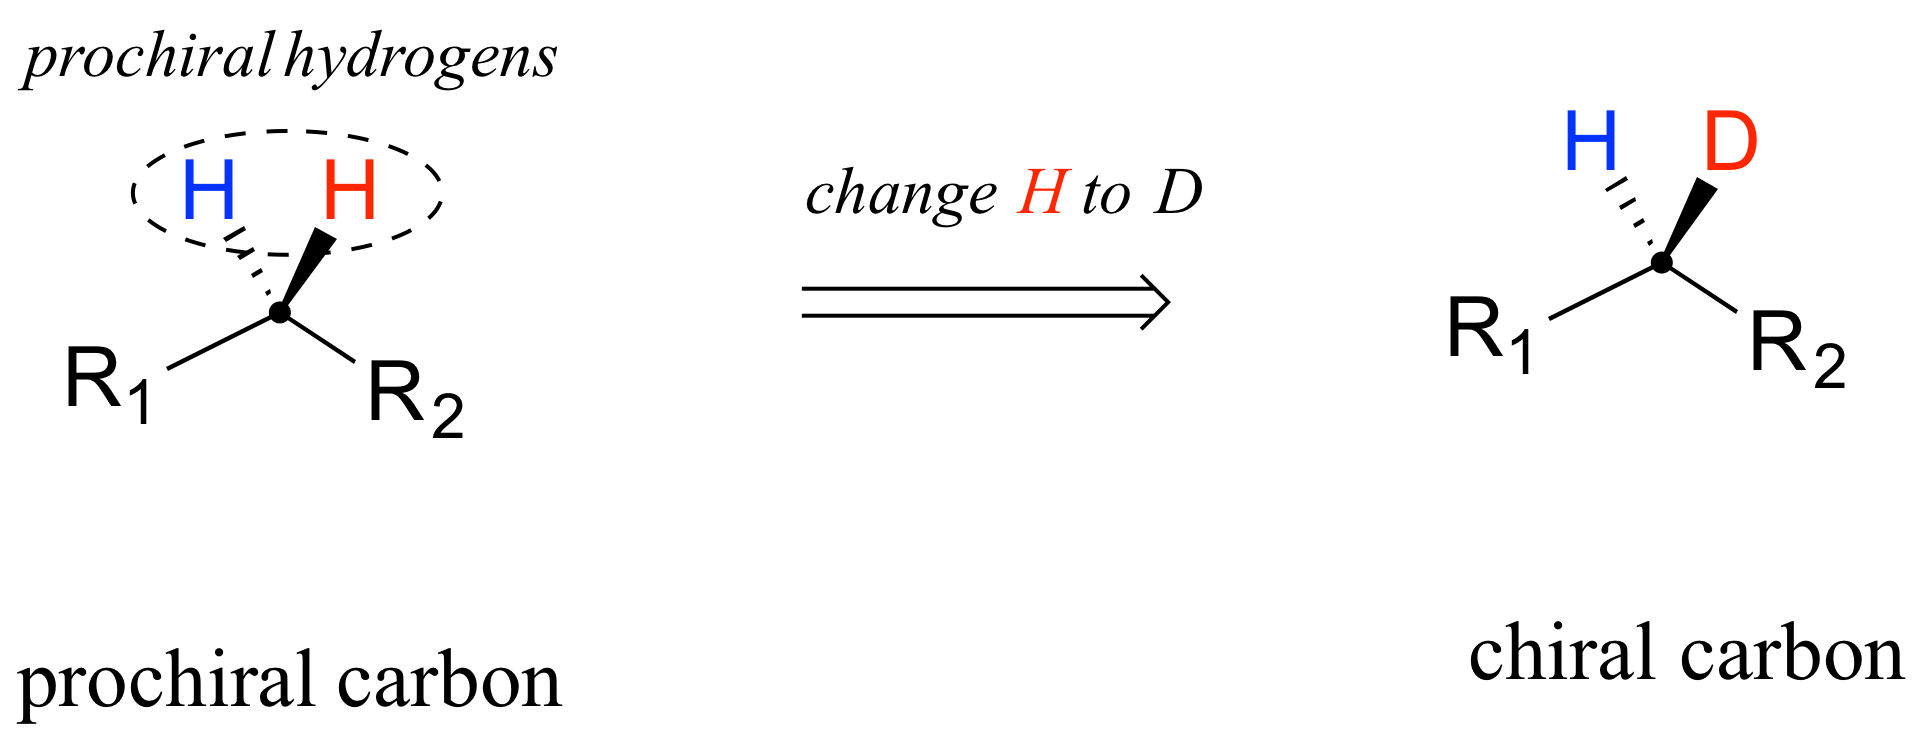 Carbono proquiral unido a dos grupos R y dos hidrógenos (azul discontinuo y rojo acuñado). Texto: hidrógenos proquirales. Cambia el rojo H a D para formar un carbono quiral.